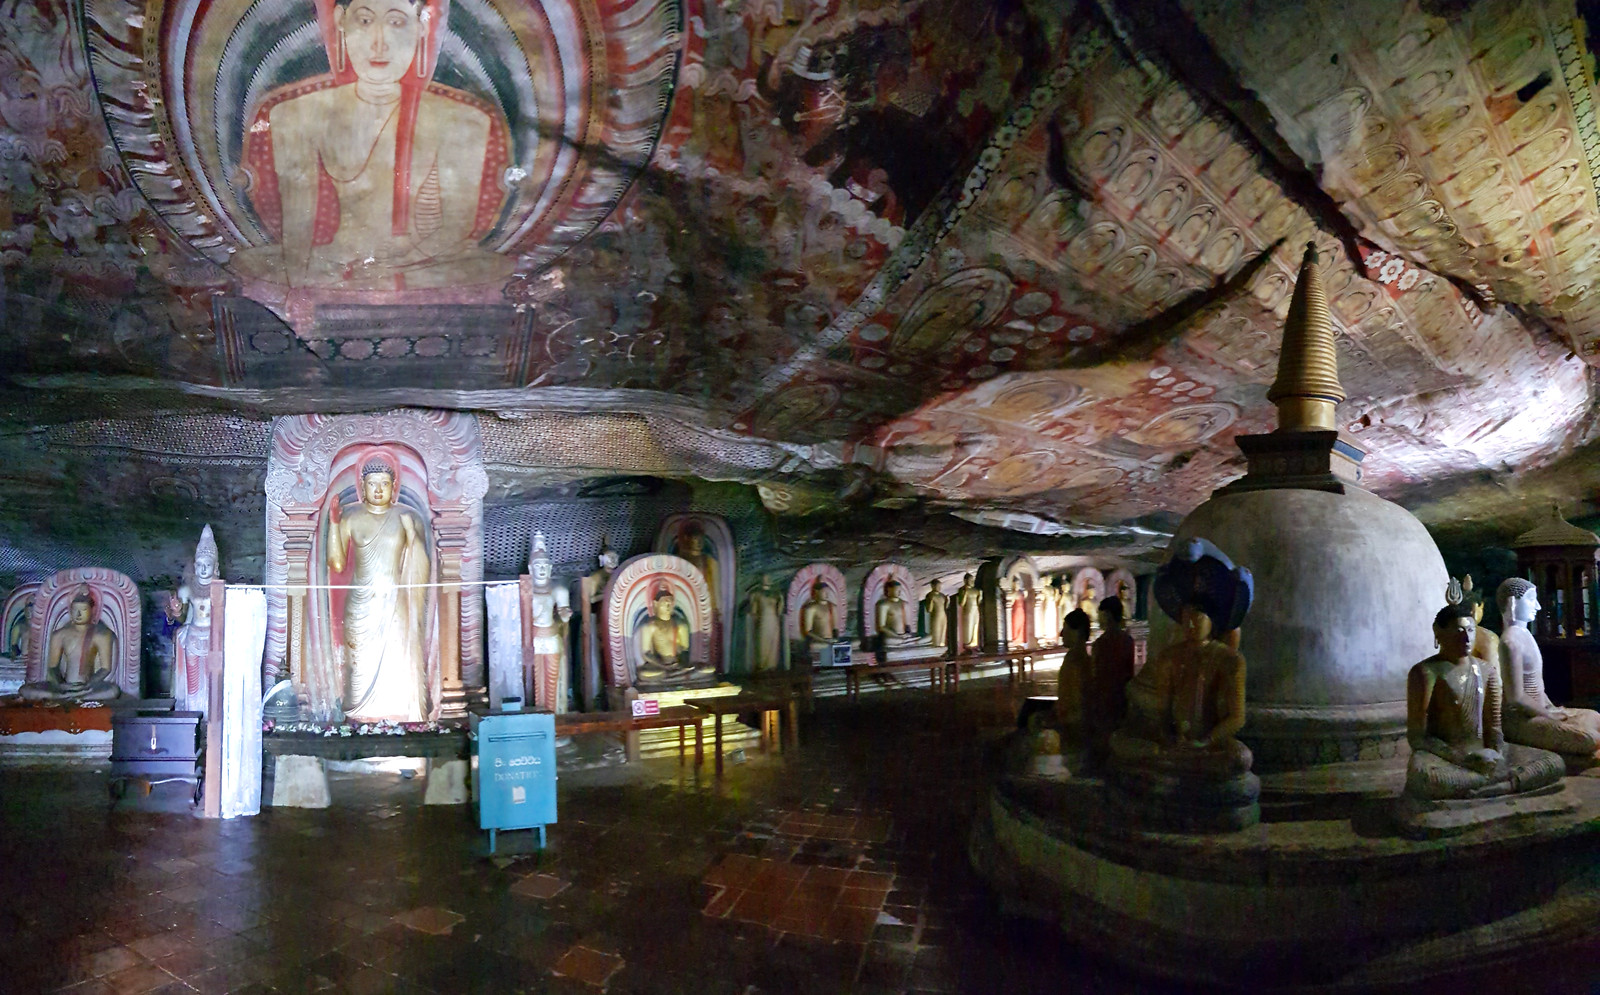 Templo de Oro de Dambulla, Cuevas de Dambulla, Sri Lanka